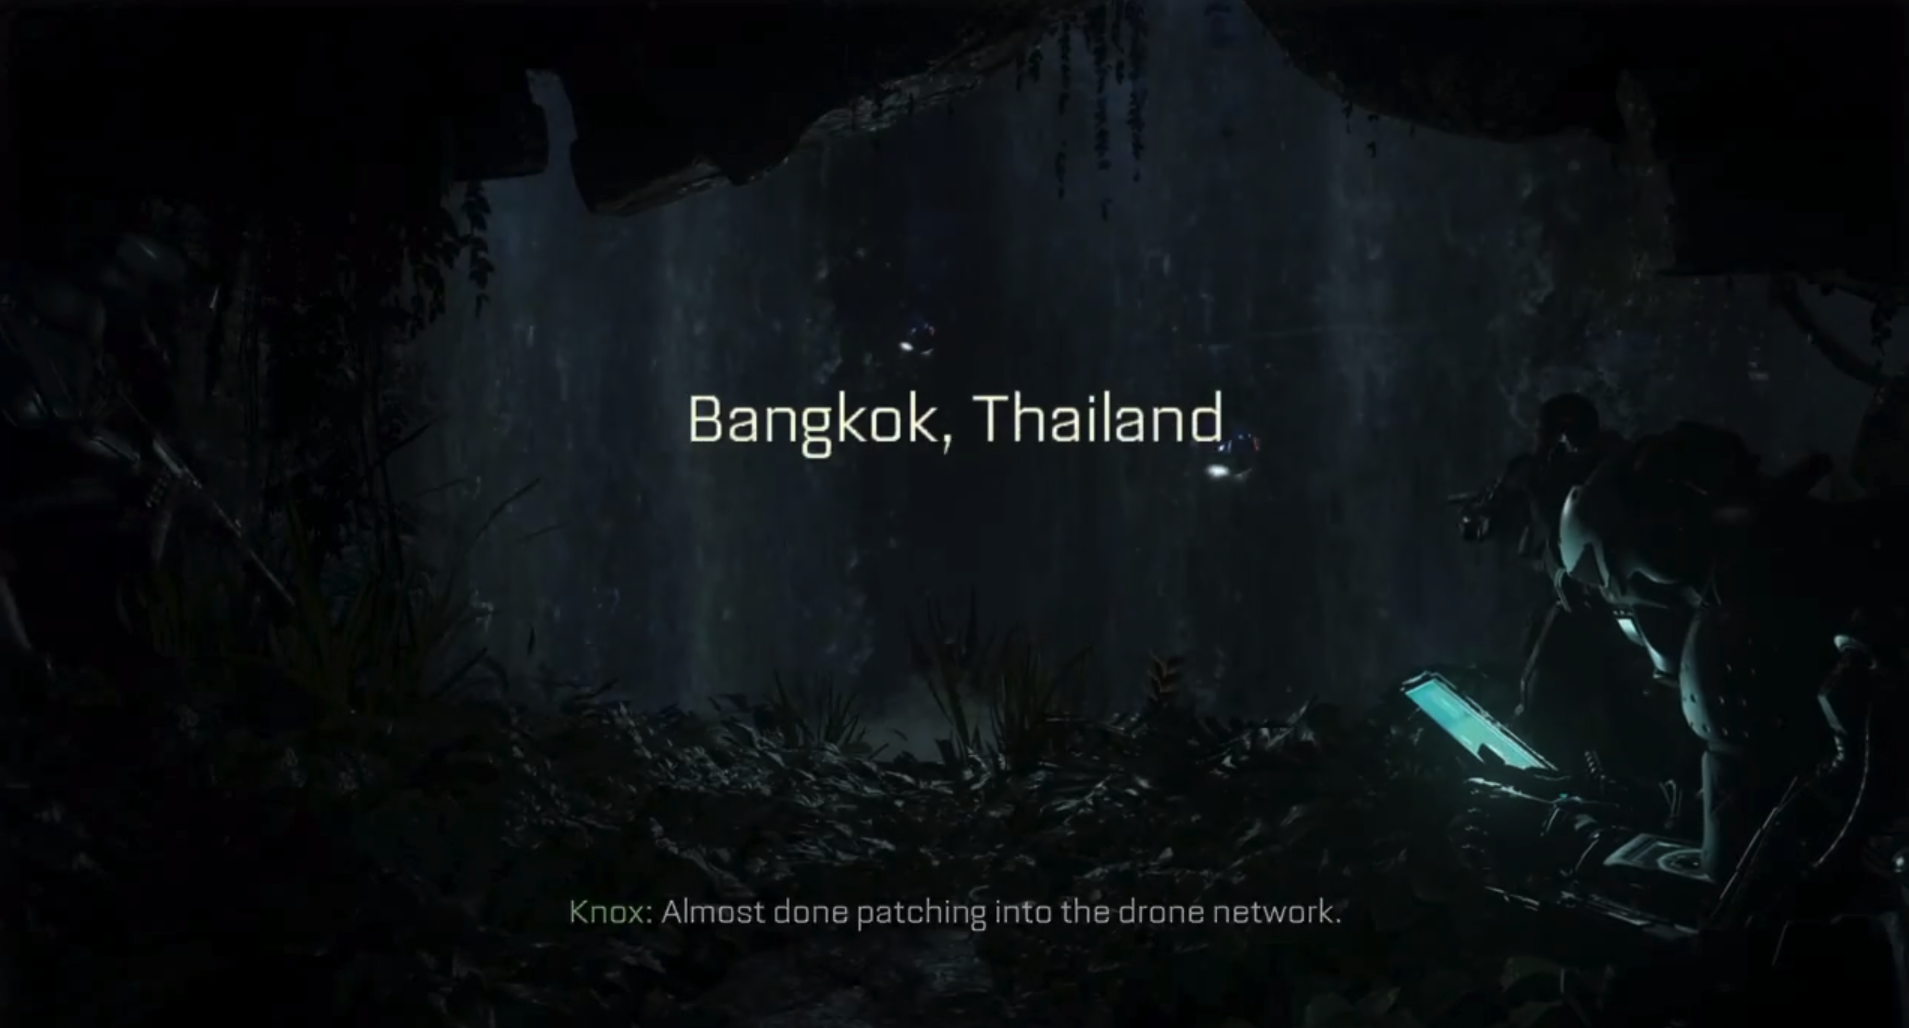 Call of Duty: Advance Warfare มีฉากกรุงเทพฯ ประเทศไทย!